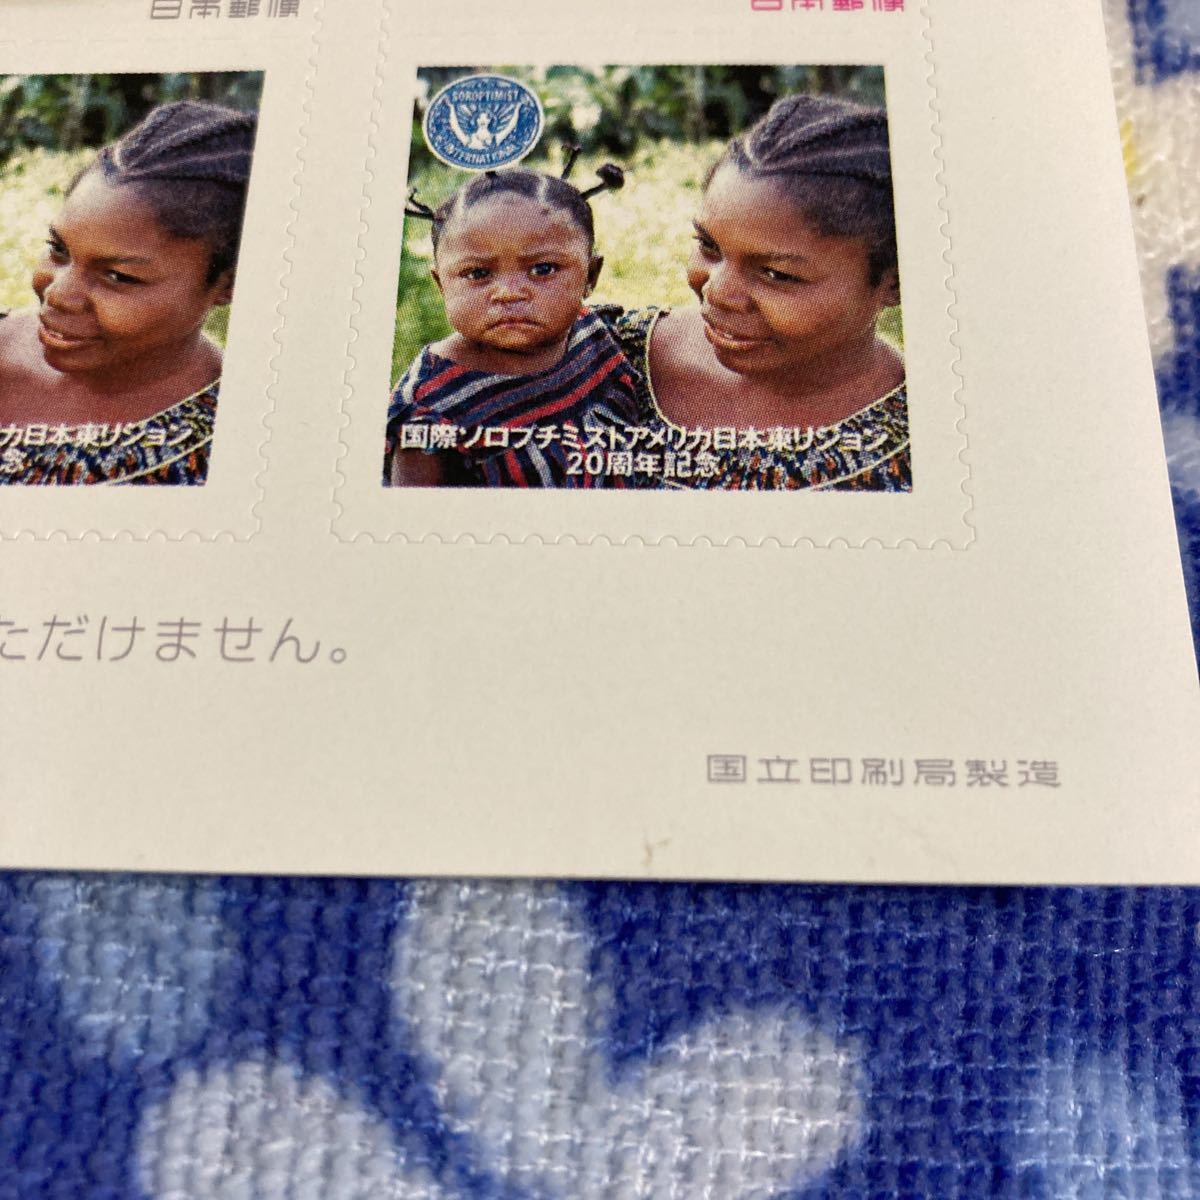 切手 写真付き 国際ソロプチミストアメリカ 日本東リジョン 20周年 安心して暮らせる安全な社会の構築に貢献しよう“ フレーム 80円×10枚_画像4